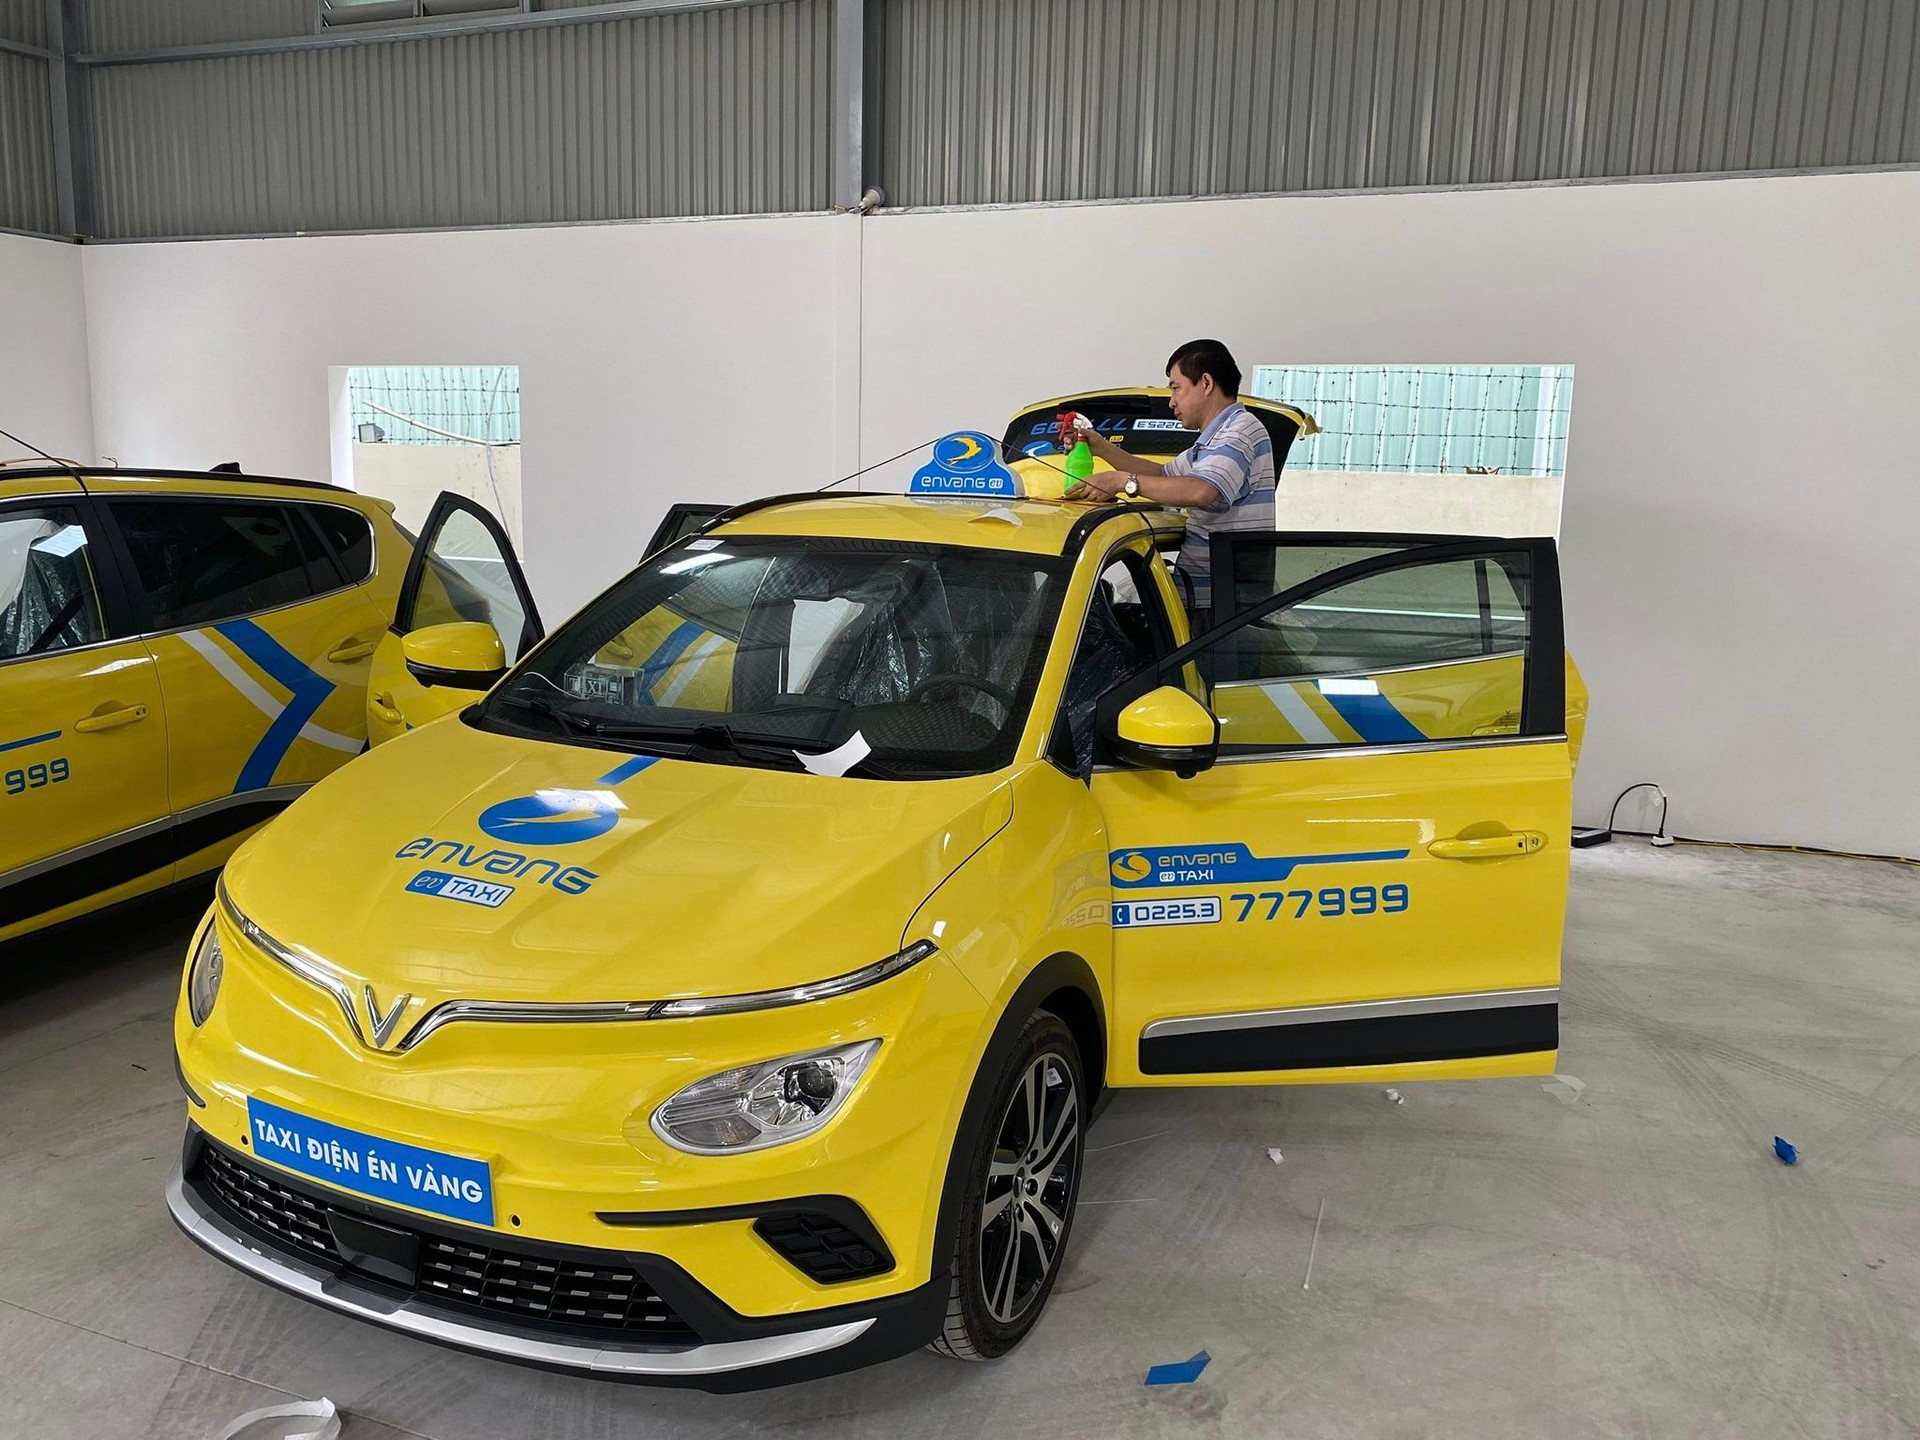 Sau Hà Nội và TP.HCM, người dân Hải Phòng sắp được trải nghiệm taxi điện VinFast nhưng lại từ một hãng taxi truyền thống quen thuộc